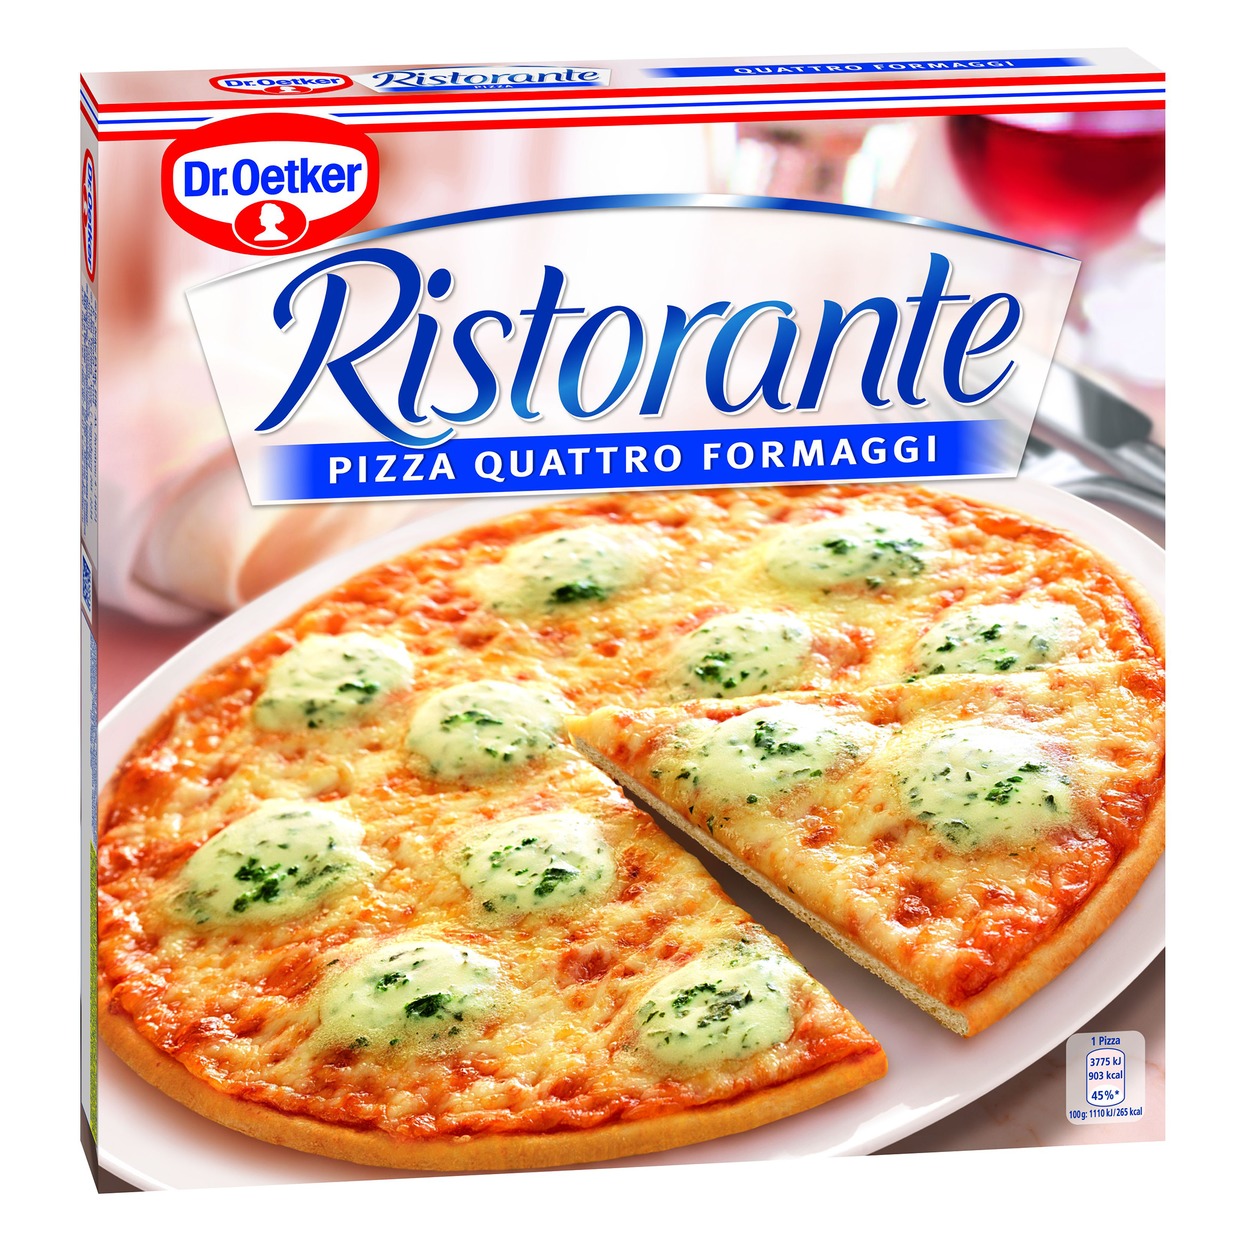 Пицца Ristorante 4 сыра; Speciale, Dr. Oetker, 330 -340 г по акции в Пятерочке